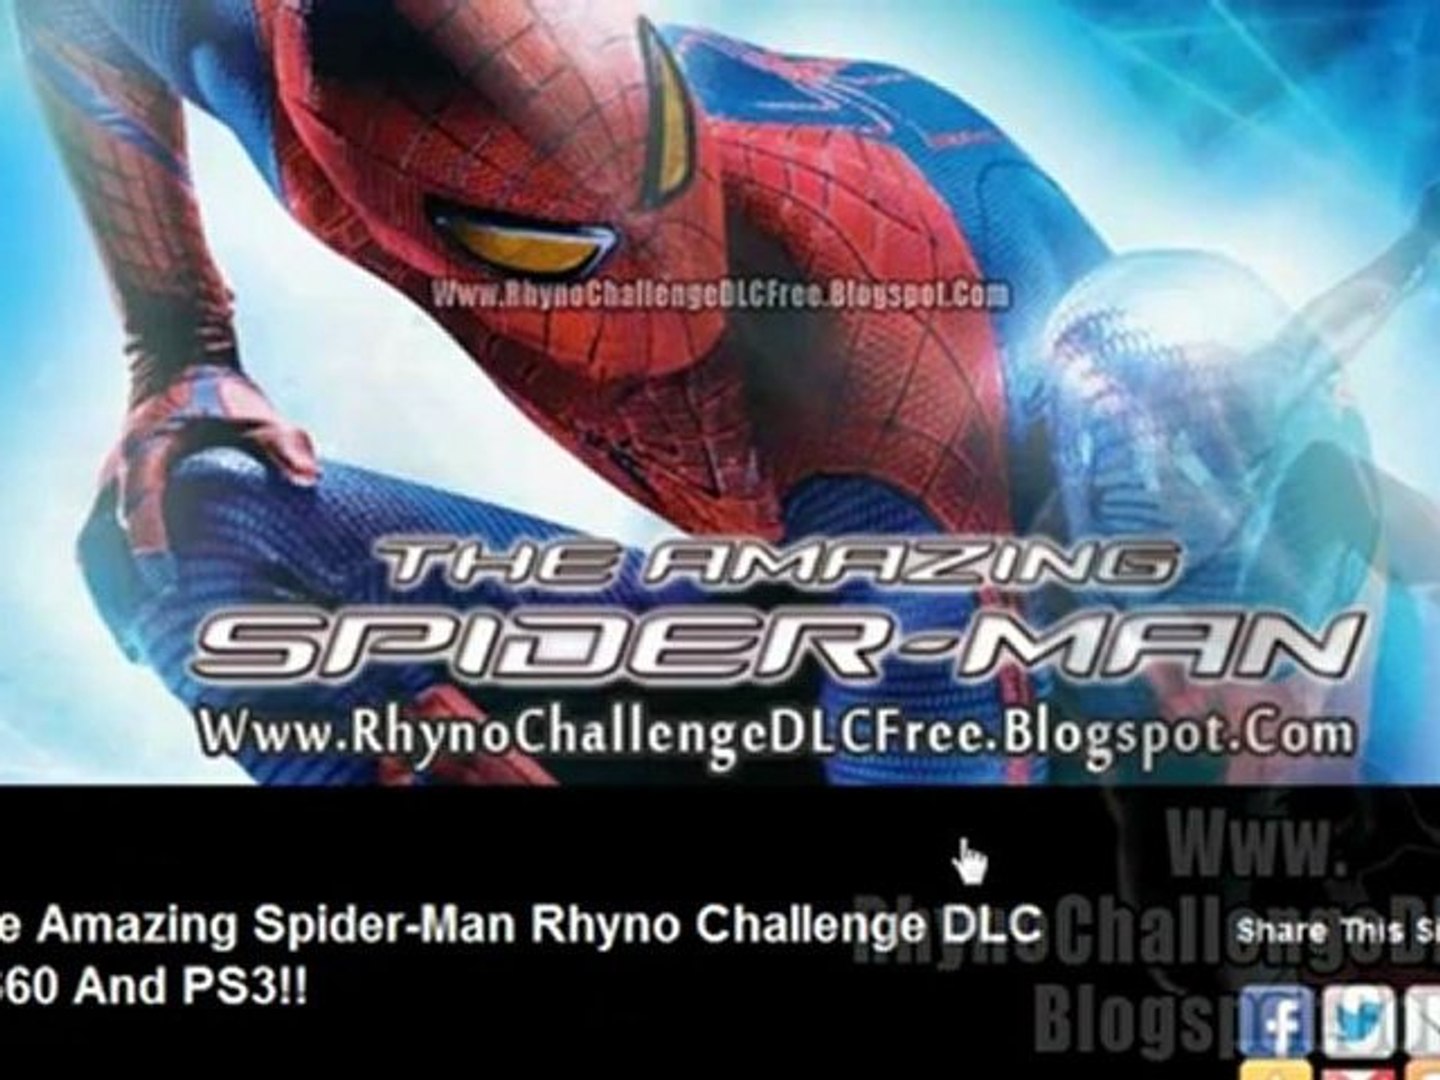 triunfante Escarpado darse cuenta Download The Amazing Spider-Man Rhyno Challenge DLC - Xbox 360 / PS3 -  video Dailymotion